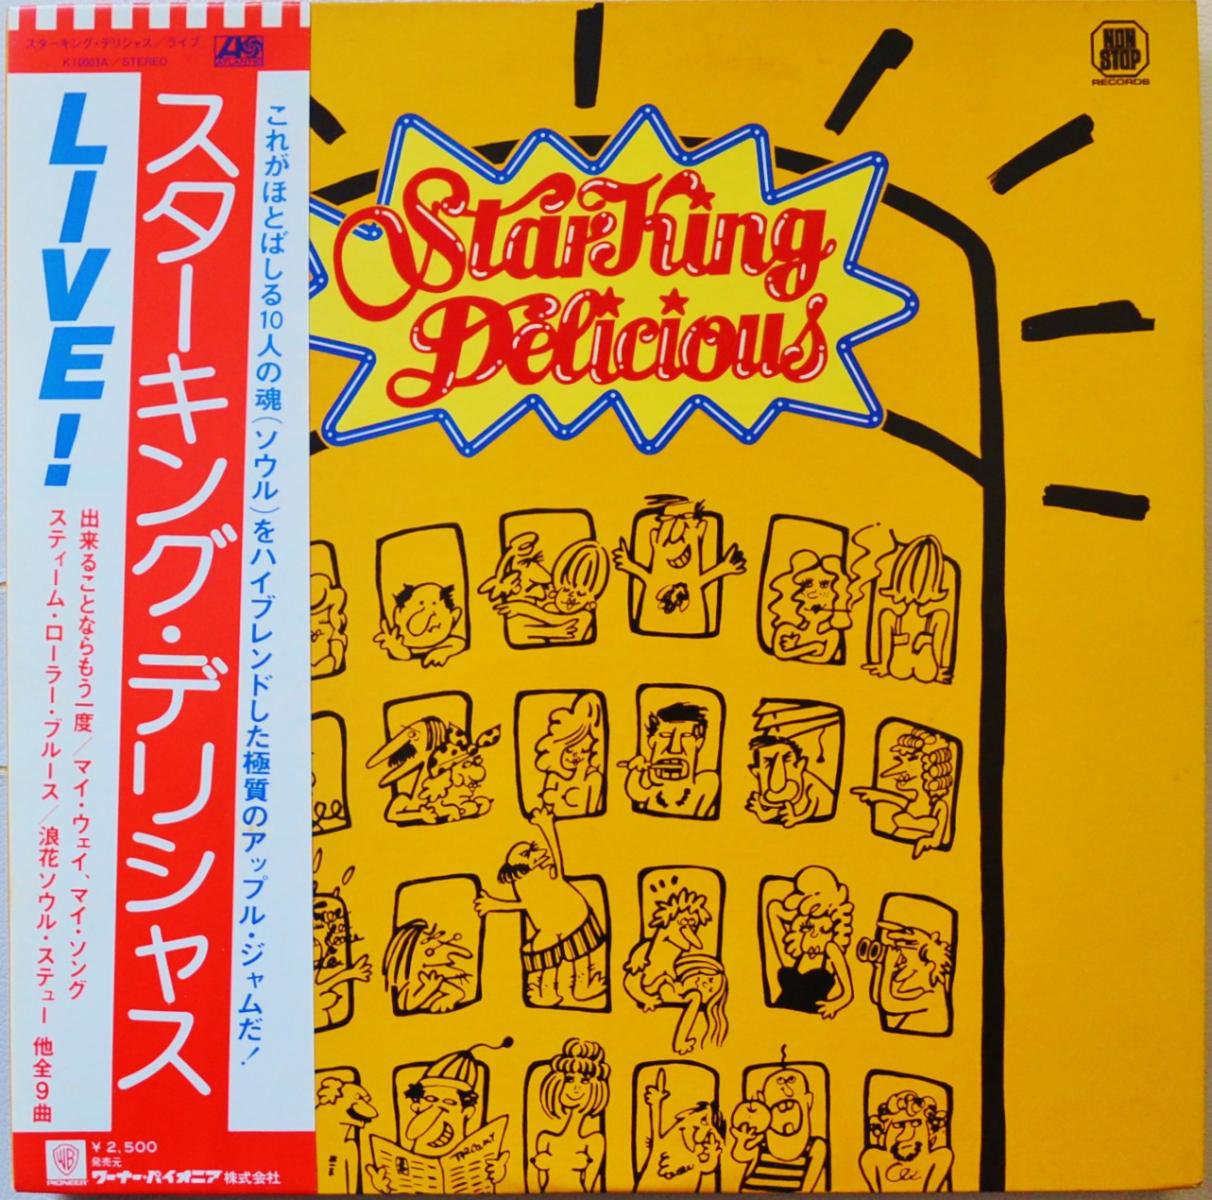 スターキング・デリシャス STARKING DELICIOUS / ライブ！LIVE! STARKING DELICIOUS (LP)